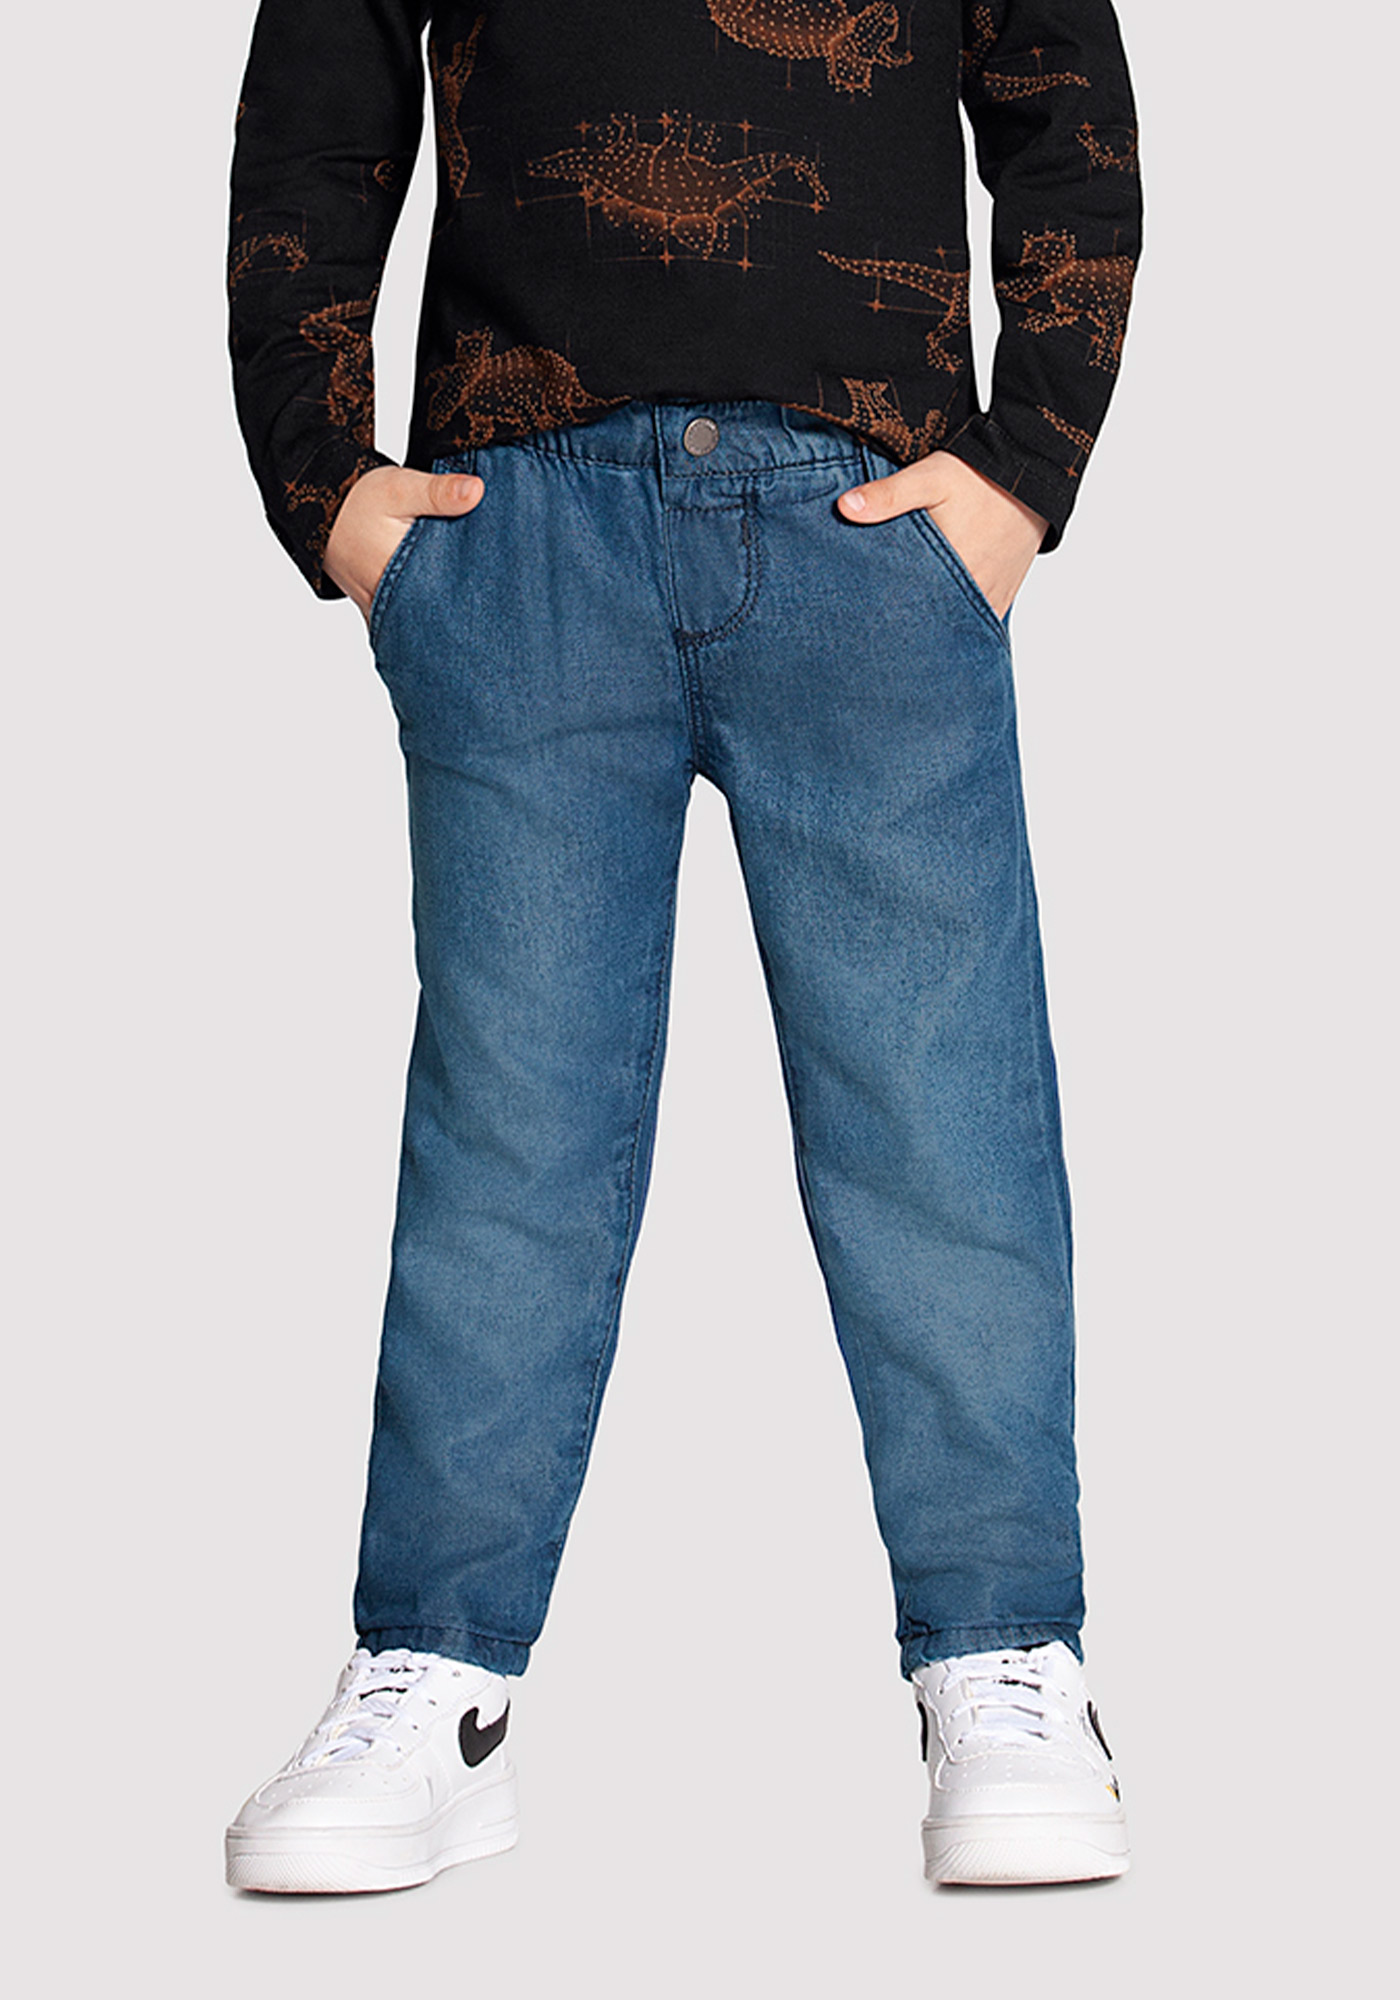 Calça Jeans Uniqlo com Elastano Forrada por Dentro, Roupa Infantil para  Menino Uniqlo Usado 71629887